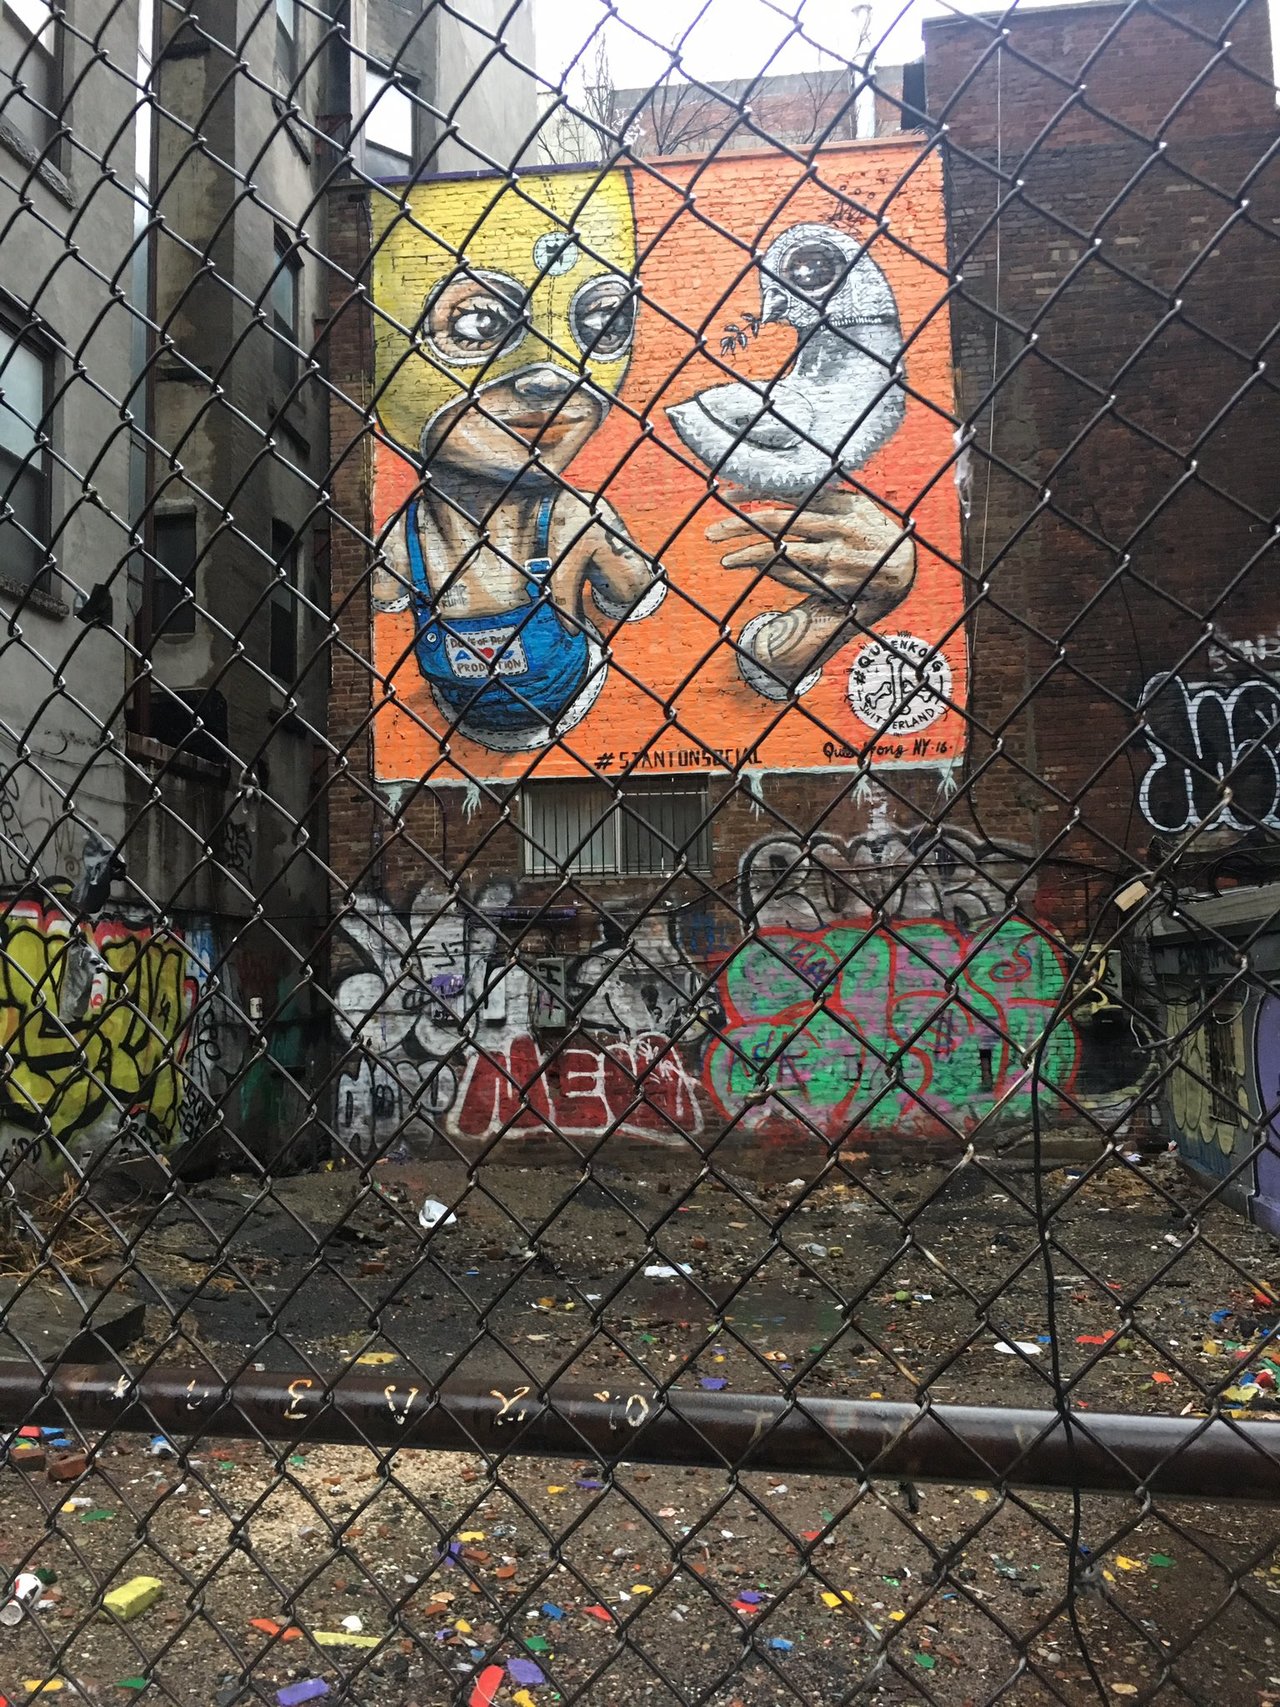 Things I see in New York City. #nyc #newyork #newyorkcity #mural #art #wallart #graffiti #Manhattan https://t.co/1BI7g3hiF8